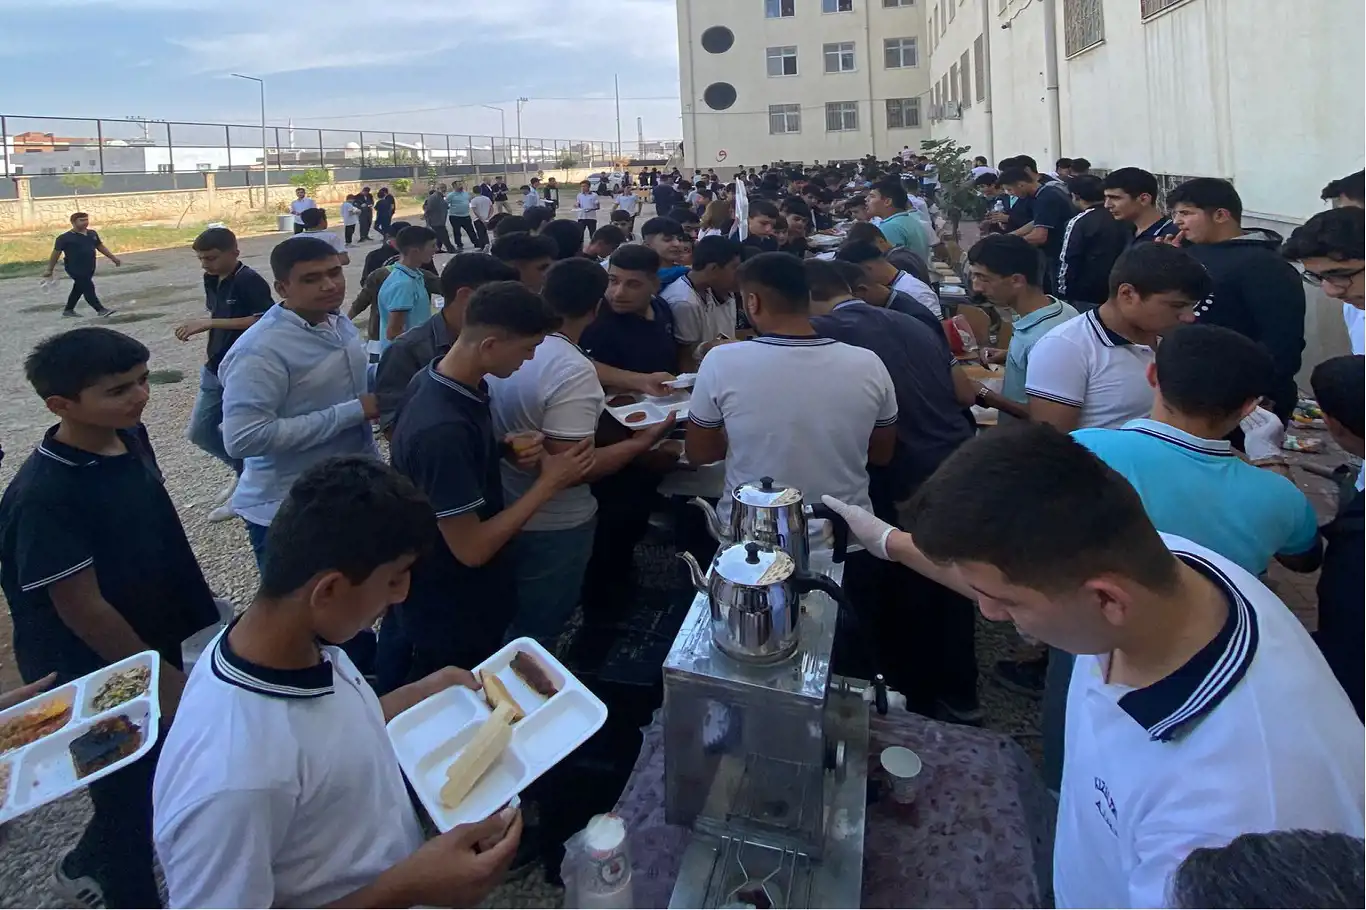 Kızıltepe Anadolu İmam Hatip Lisesinde Gazze yararına kermes açıldı